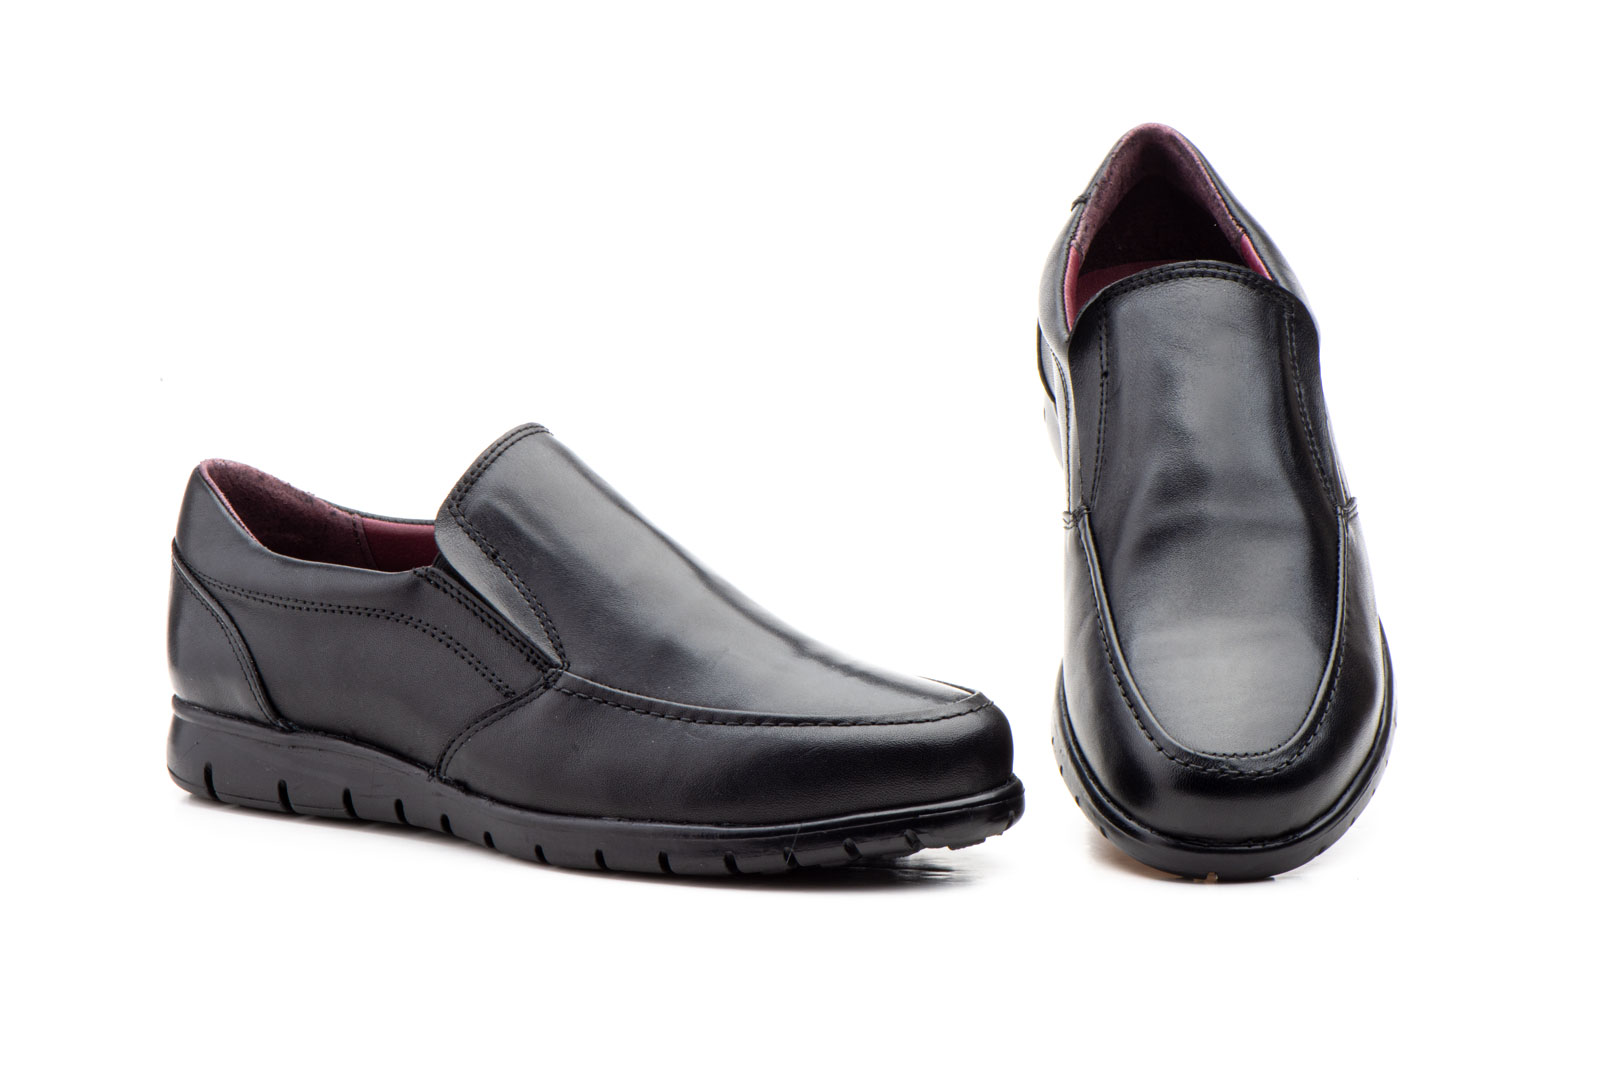 Zapatos Hombre Piel Negro Elásticos  -  Ref. GI-17003 Negro